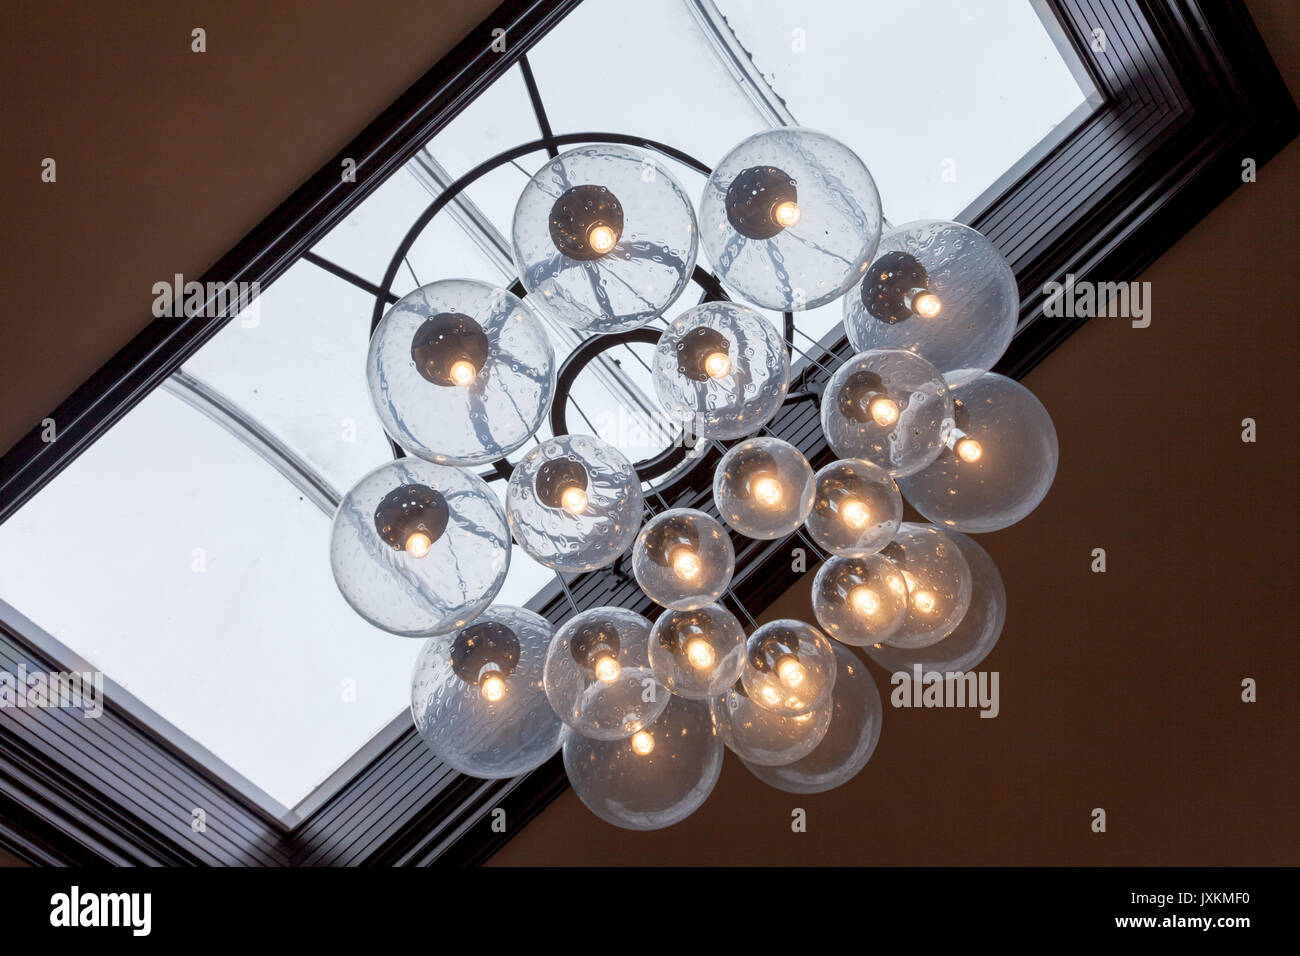 Lampade da soffitto lampade fatte dai globi di vetro in un buiulding Foto Stock